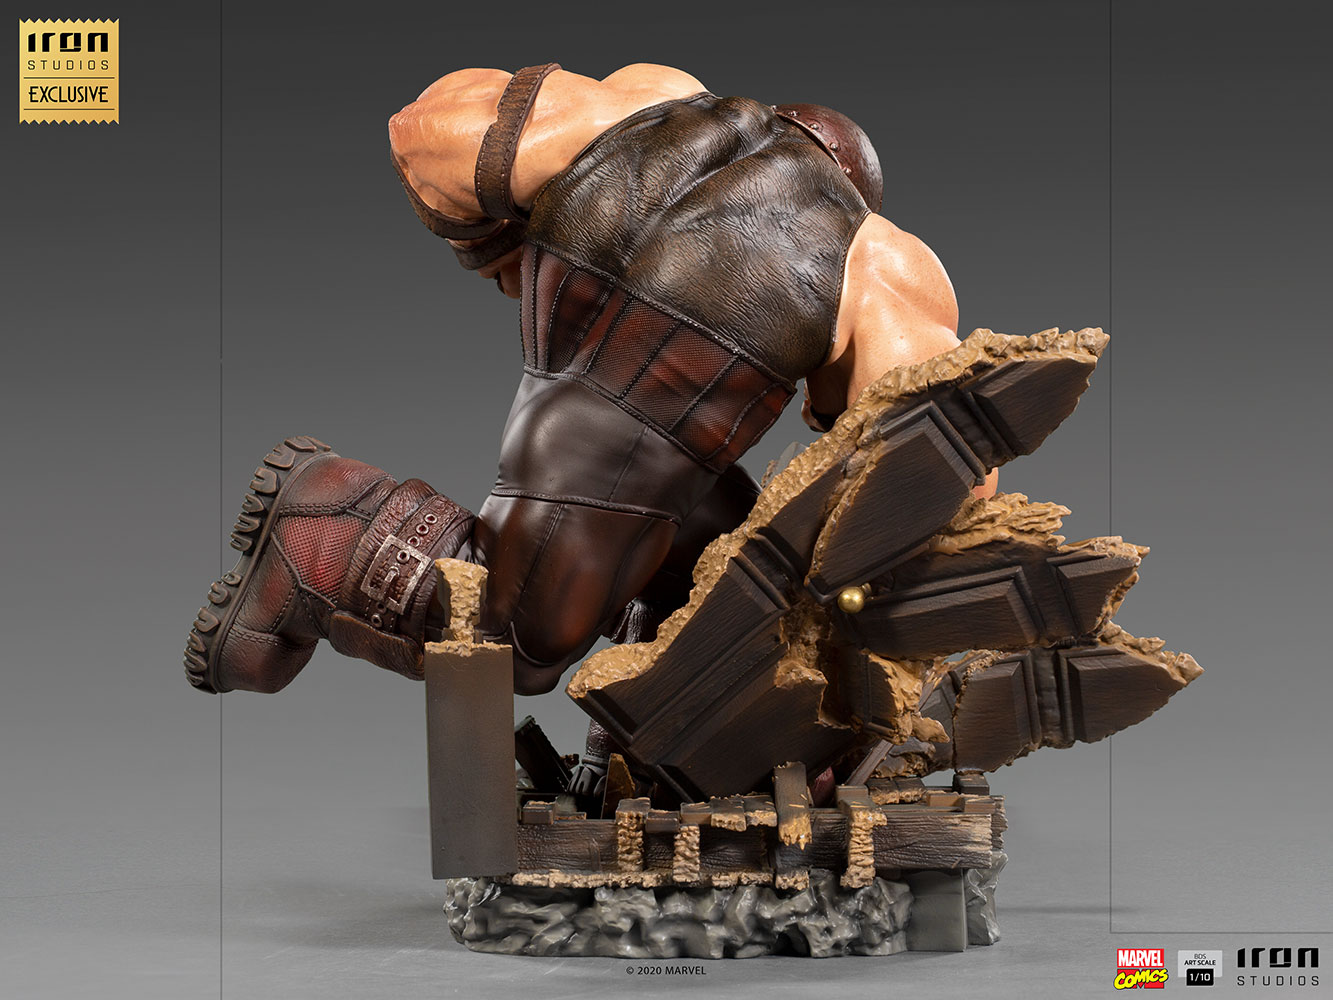 IRON STUDIOS : Juggernaut 1/10 Scale Statue Juggernaut-110-scale-statue-iron-studios_marvel_gallery_6081b4abc7b80